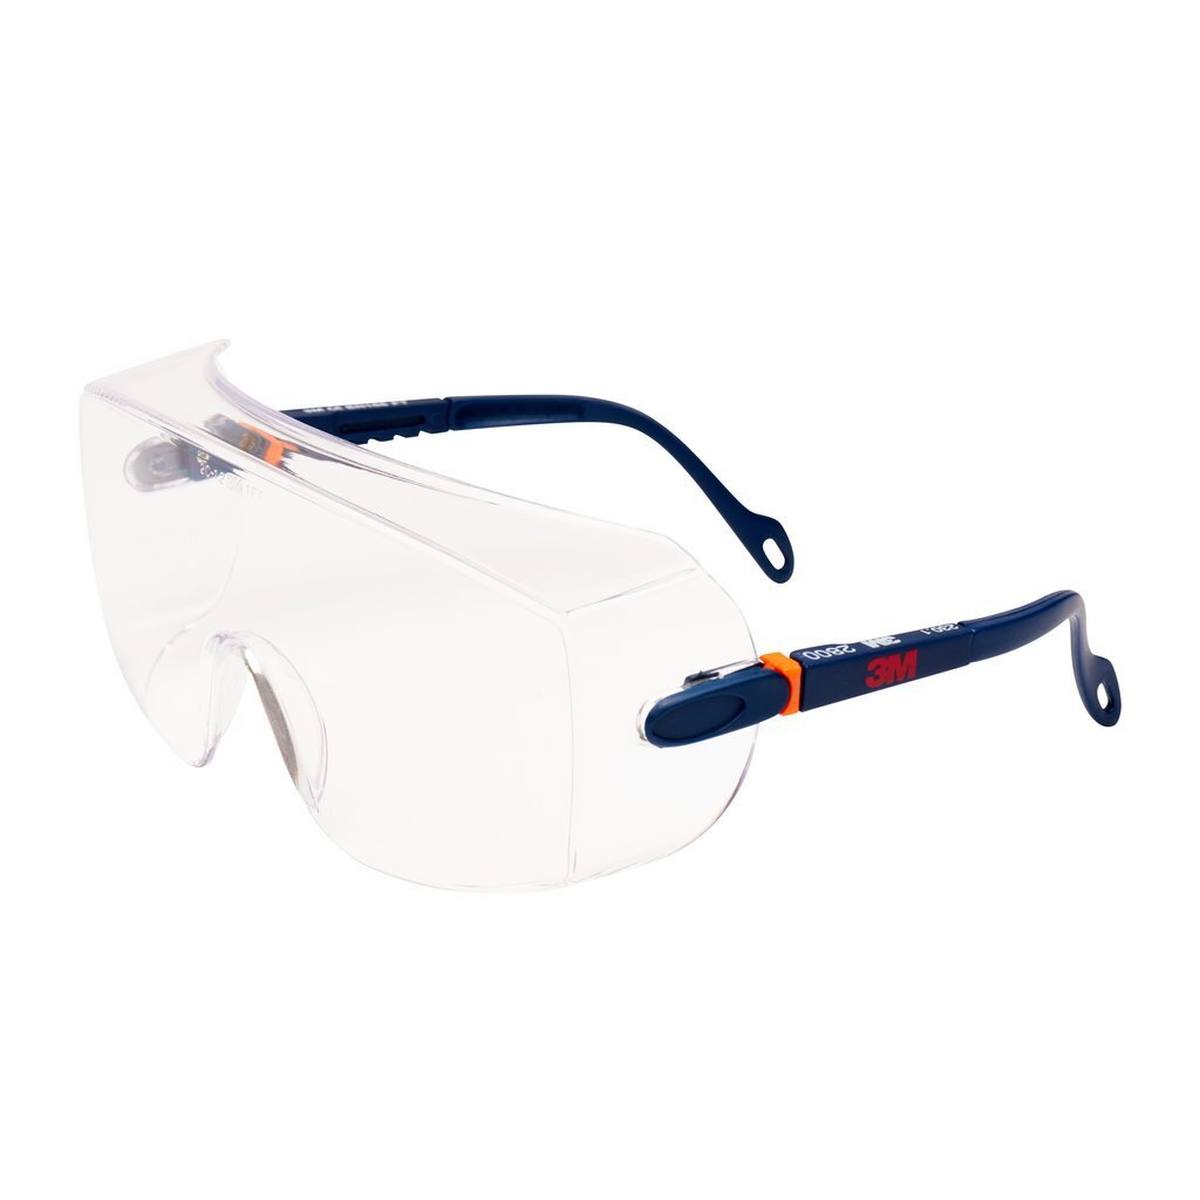 3M 2800 Suojalasit AS/UV, PC, kirkkaat, säädettävät, ihanteelliset suojalasien päälle silmälasien käyttäjille.